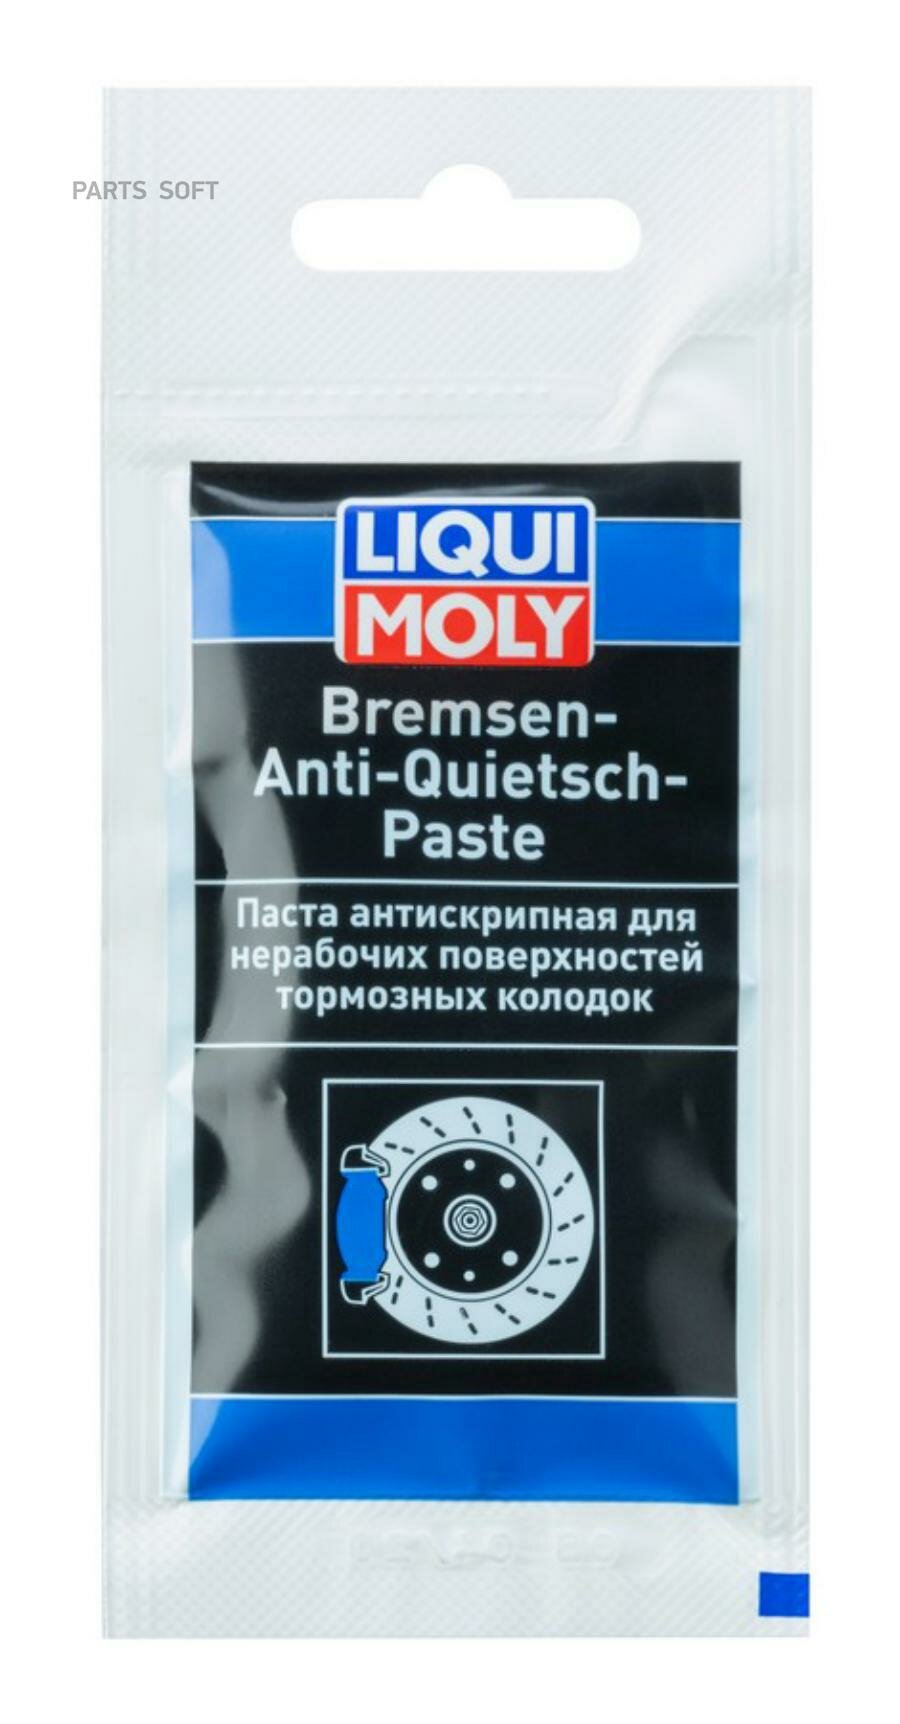 Смазка Liqui Moly Bremsen Anti Quietsch Paste Для Тормозных Систем 001 Кг Liqui moly арт. 7585